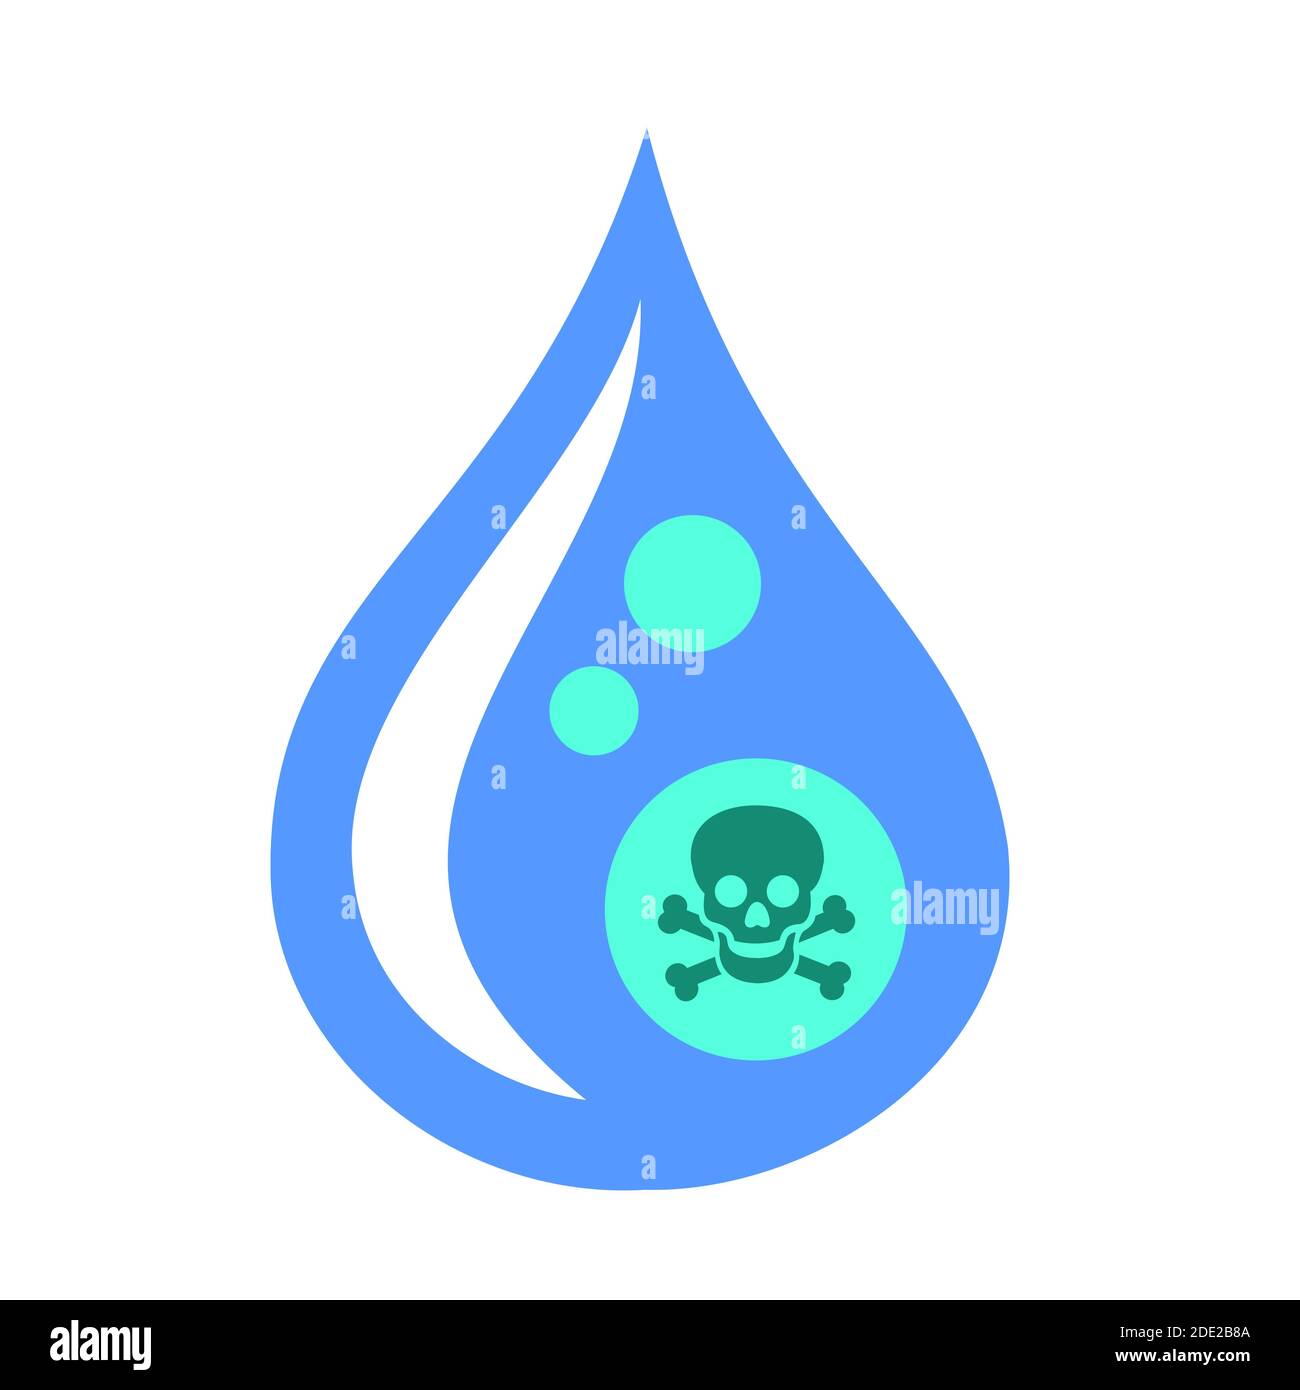 Goutte d'eau avec signe de crâne et d'os - eau contaminée et polluée. L'eau est dangereuse, dangereuse et toxique en raison de sa toxicité, de sa contamination Banque D'Images